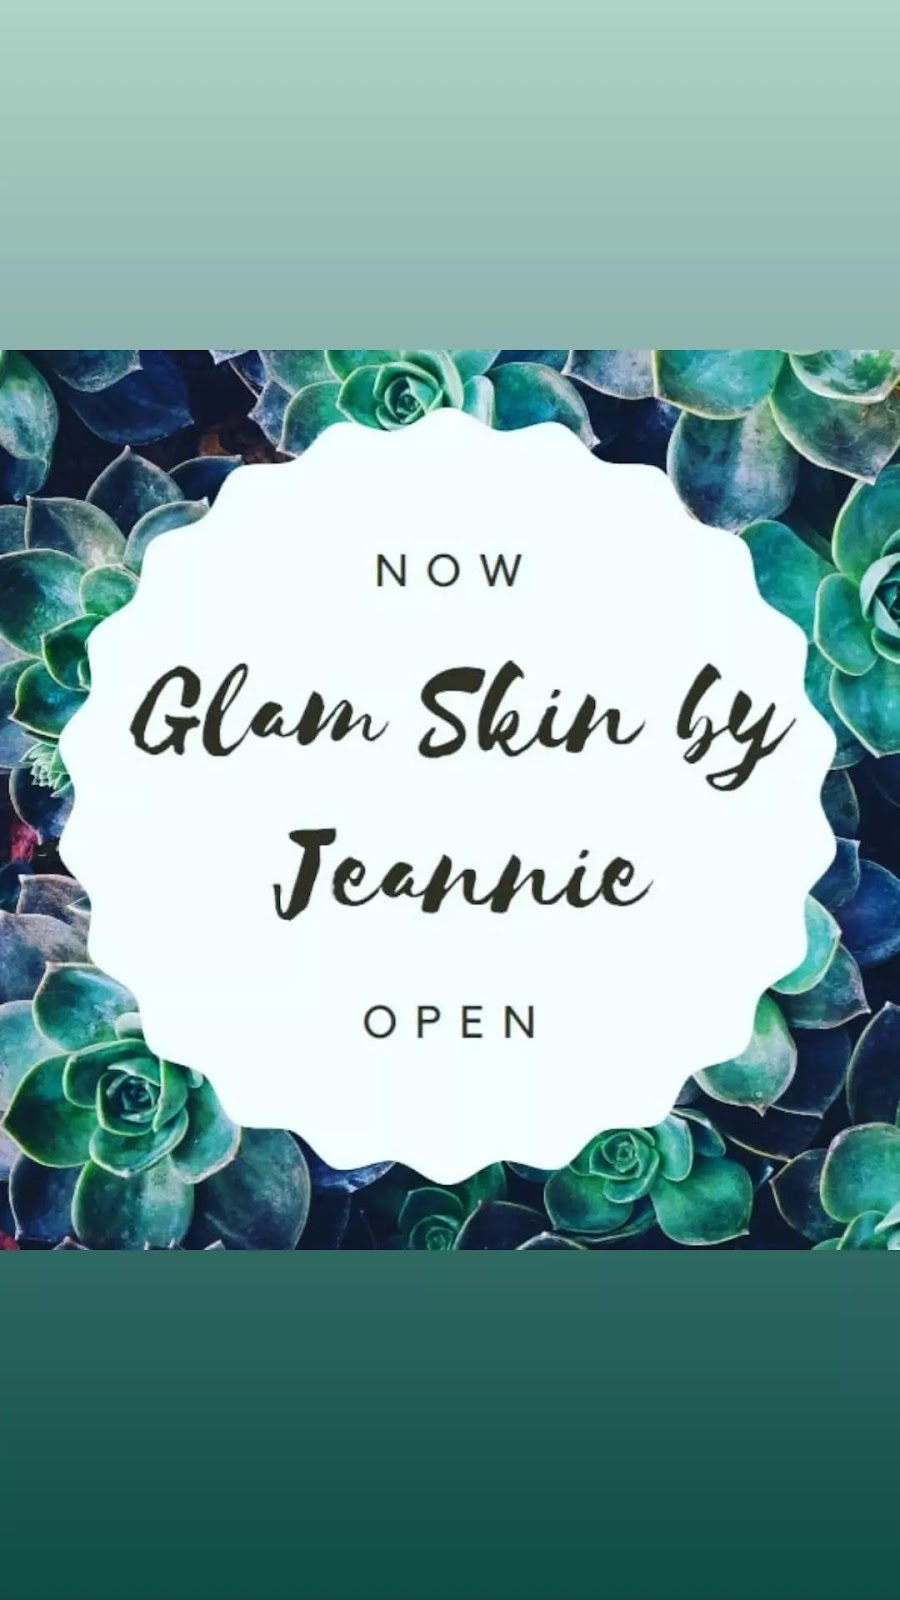 Glam Skin by Jeannie | 737 W Palatine Rd, Palatine, IL 60067 | Phone: (630) 607-2372